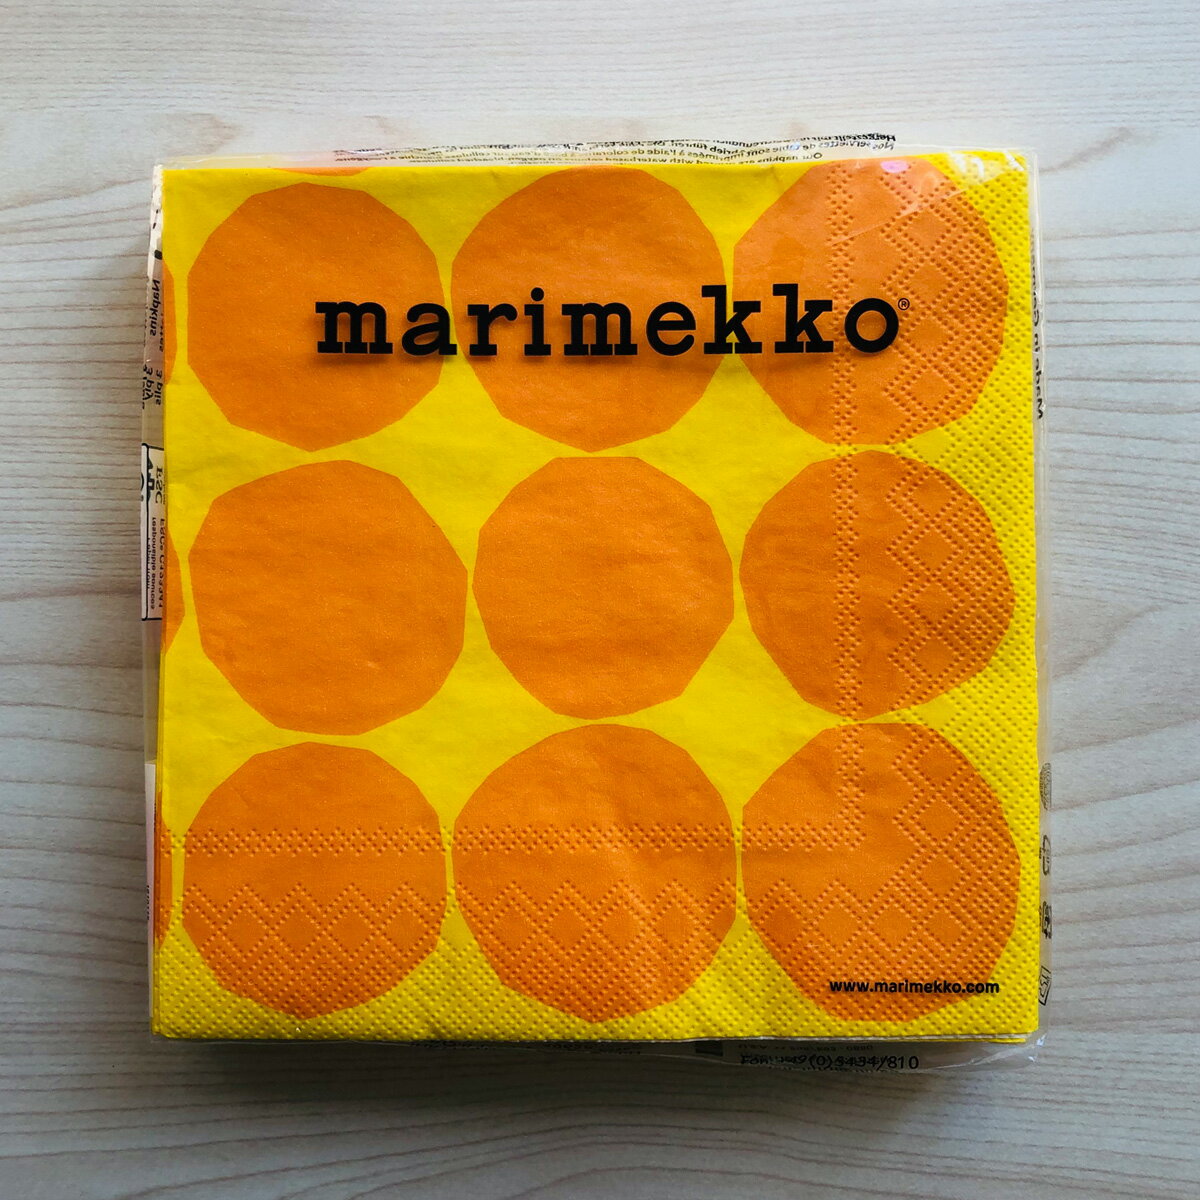 【楽天スーパーSALE対象商品】マリメッコ marimekko ペーパーナプキン 紙ナプキン ランチサイズ 20枚 606470 KIVET キヴェット yellow ドット イエロー+オレンジ